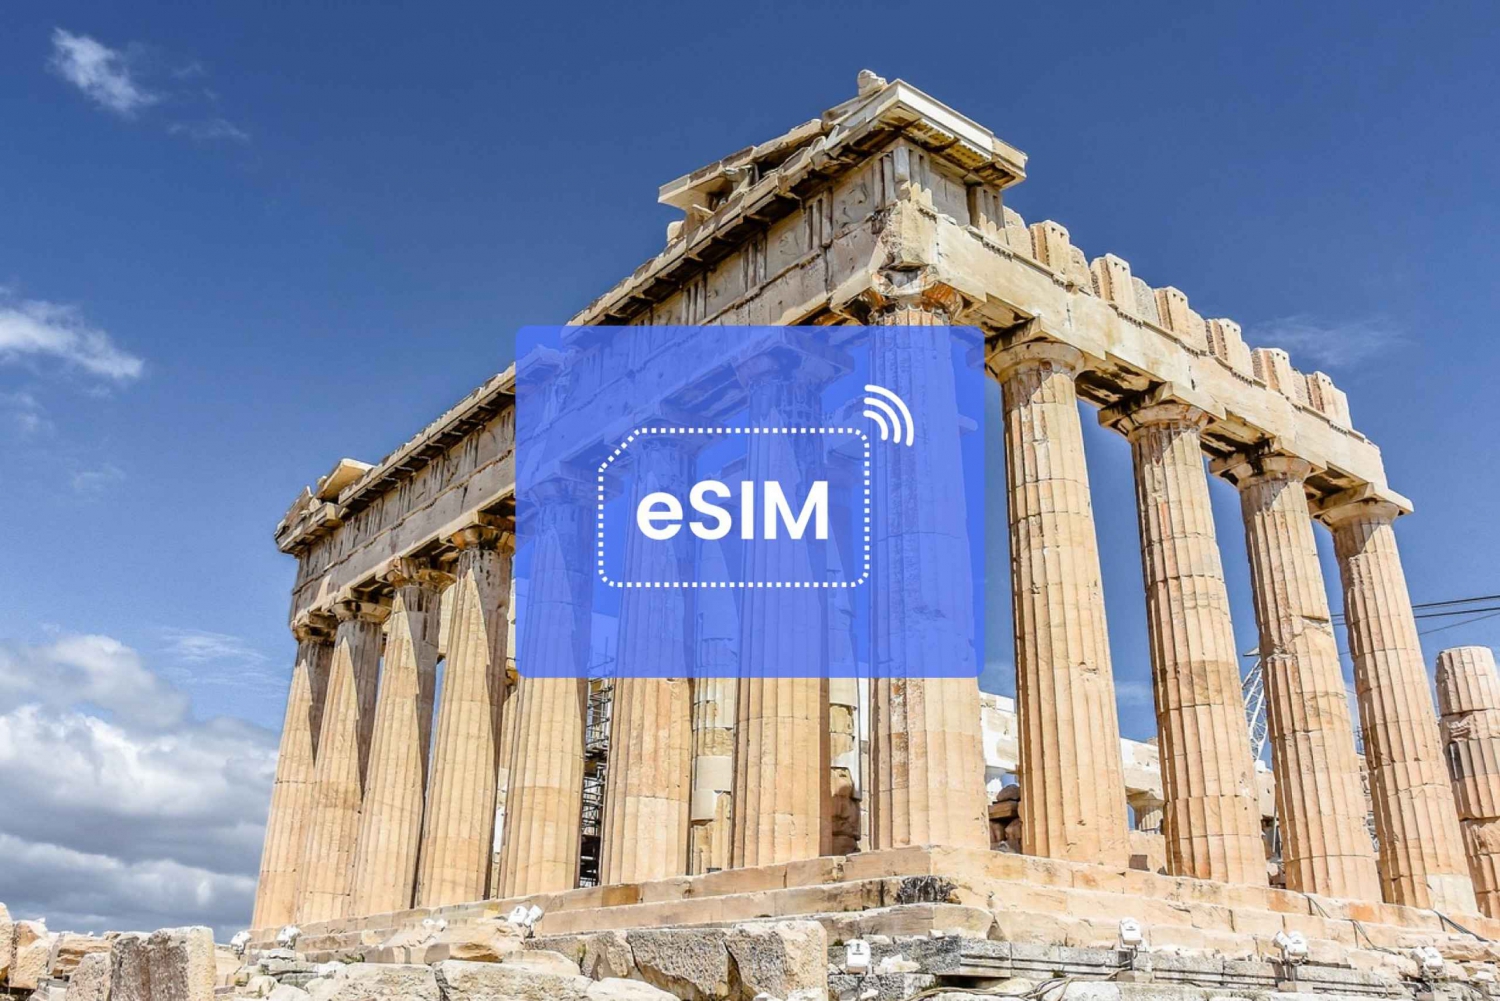 Athens: Greece/ Europe eSIM Roaming Mobile Data Plan